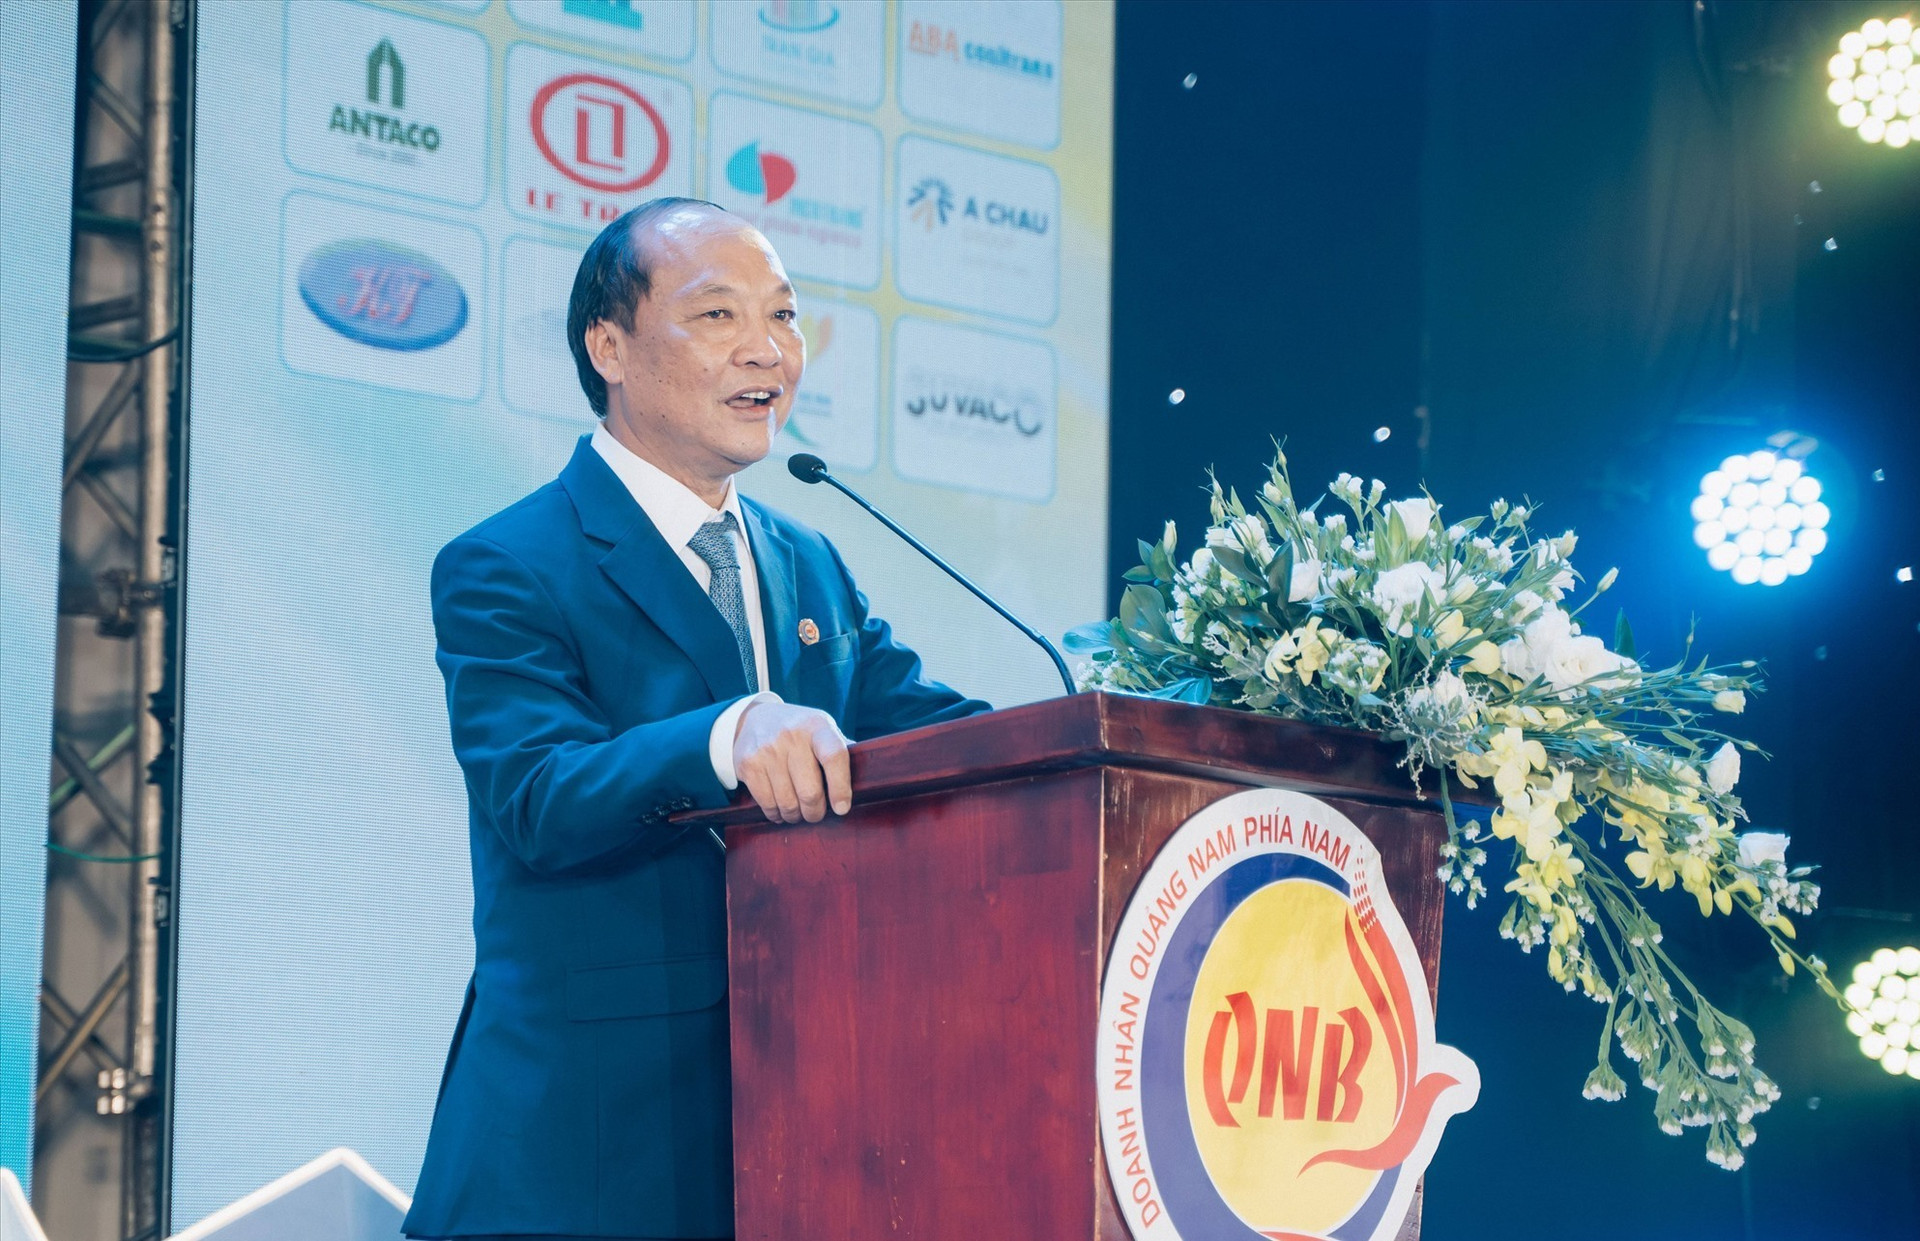 Ông Đỗ Xuân Diện giữ chức Chủ tịch Hội doanh nhân Quảng Nam phía Nam nhiệm kỳ 2023 - 2027. Ảnh: PHAN VINH